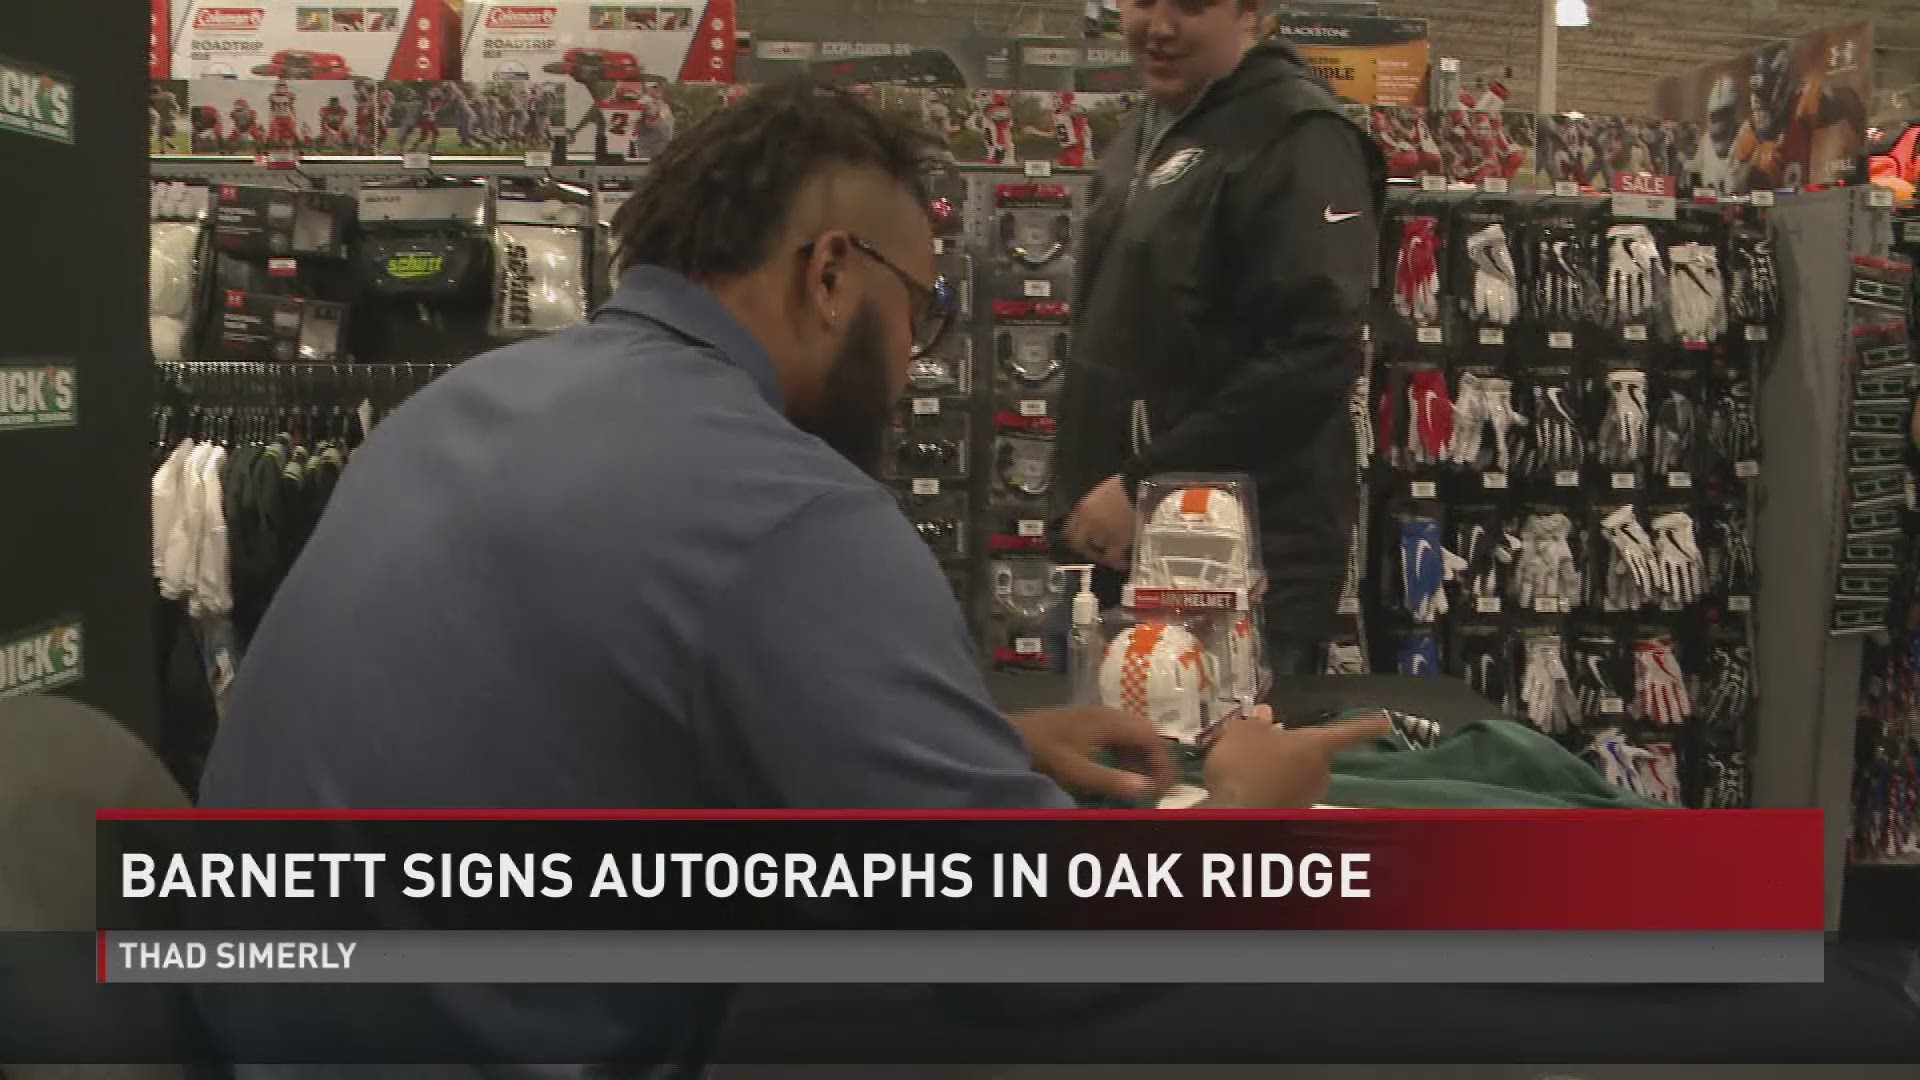 VFL Derek Barnett signed autographs for Vol fans at the new Dick's Sporting Goods in Oak Ridge.